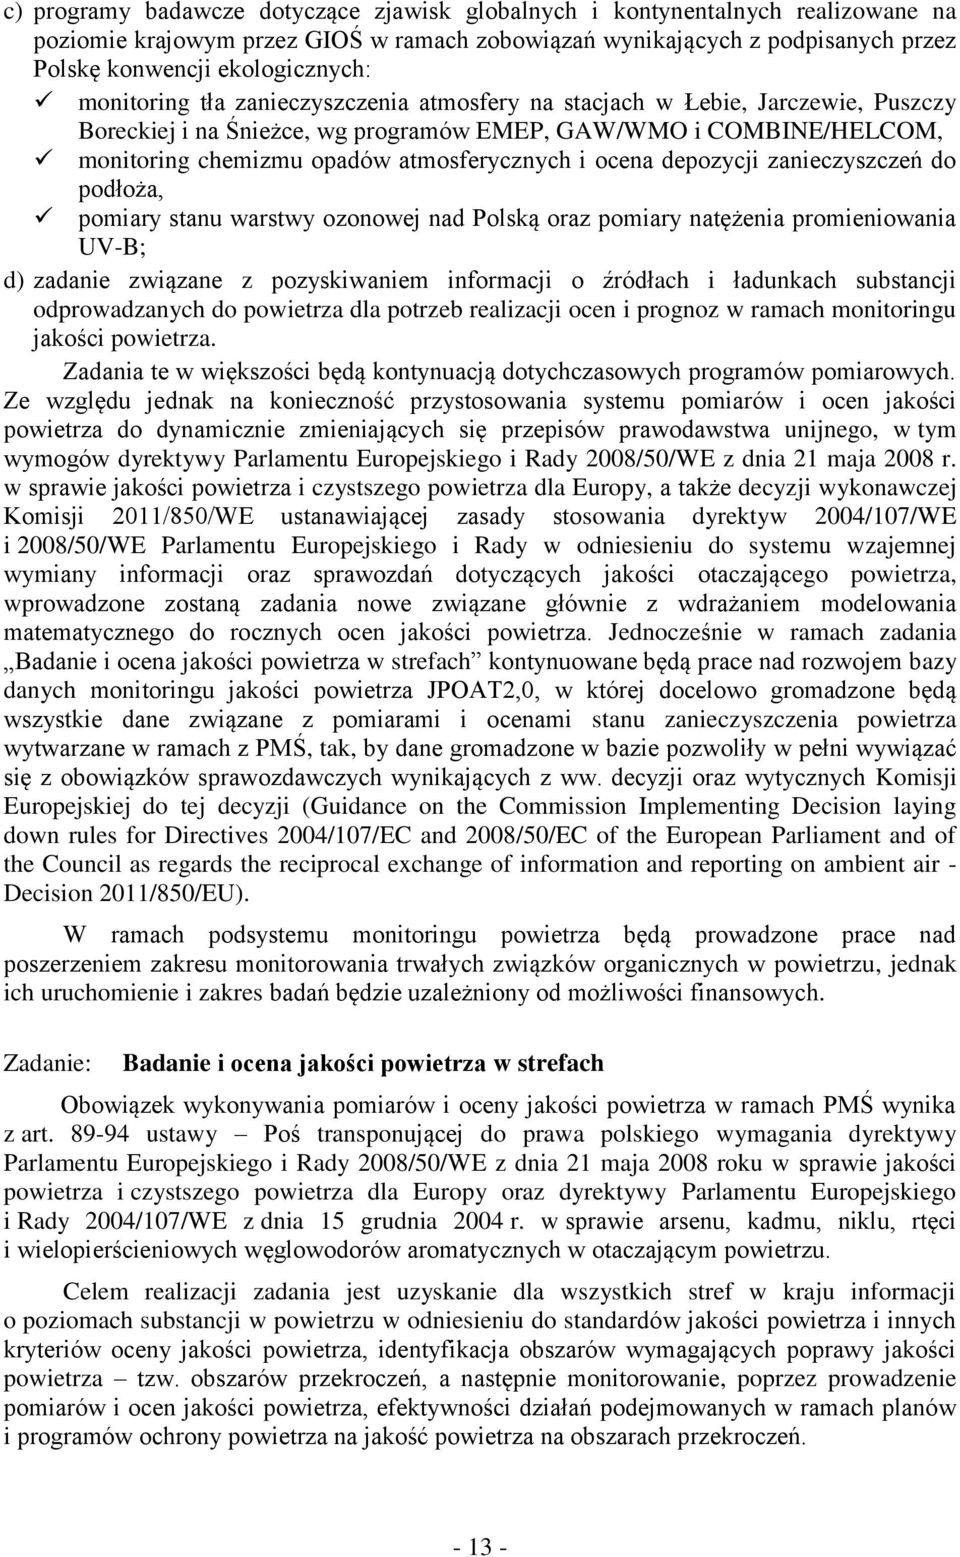 ocena depozycji zanieczyszczeń do podłoża, pomiary stanu warstwy ozonowej nad Polską oraz pomiary natężenia promieniowania UV-B; d) zadanie związane z pozyskiwaniem informacji o źródłach i ładunkach